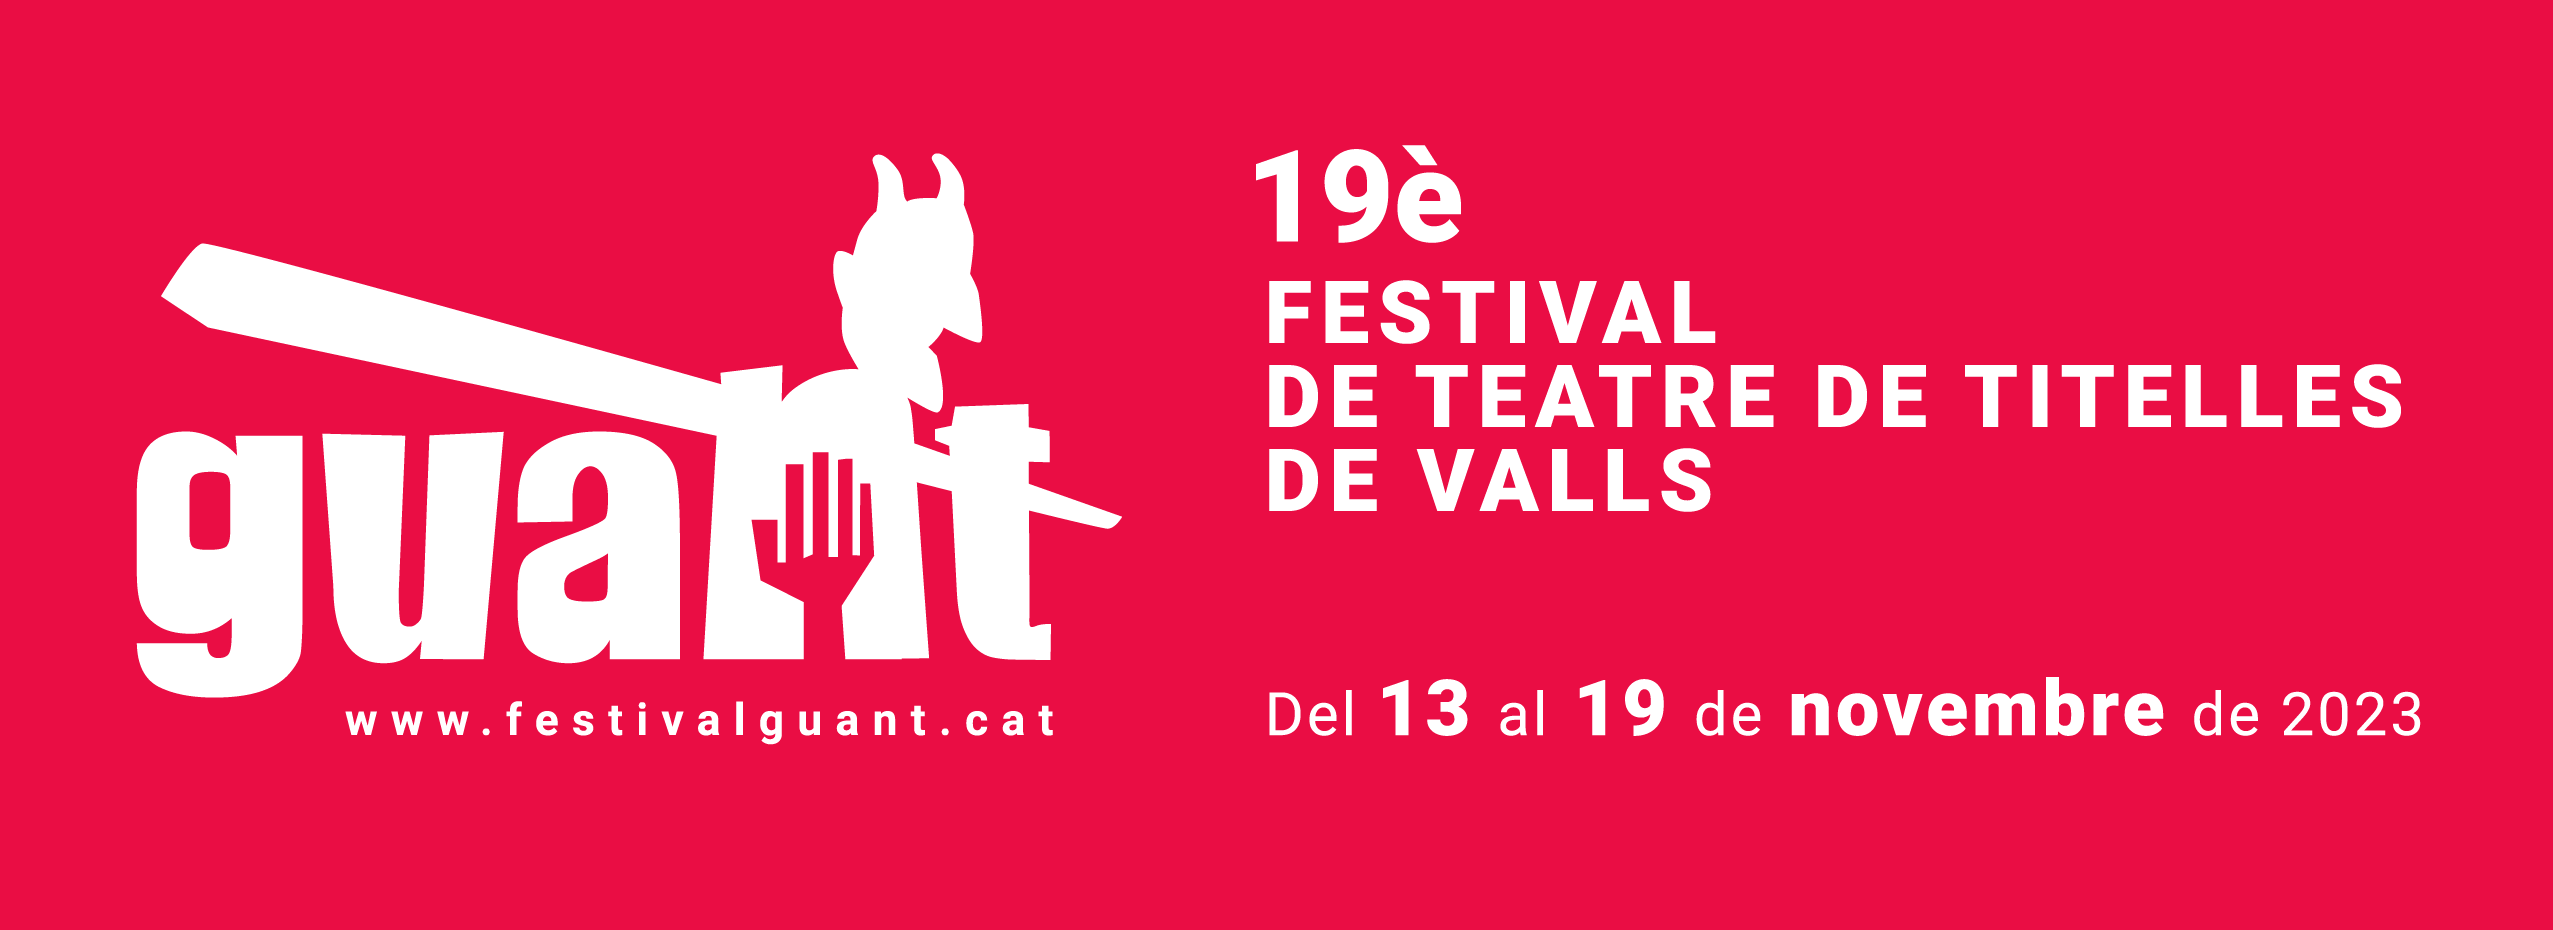 19è Festival internacional de teatre de titelles de Valls | Taller de titelles